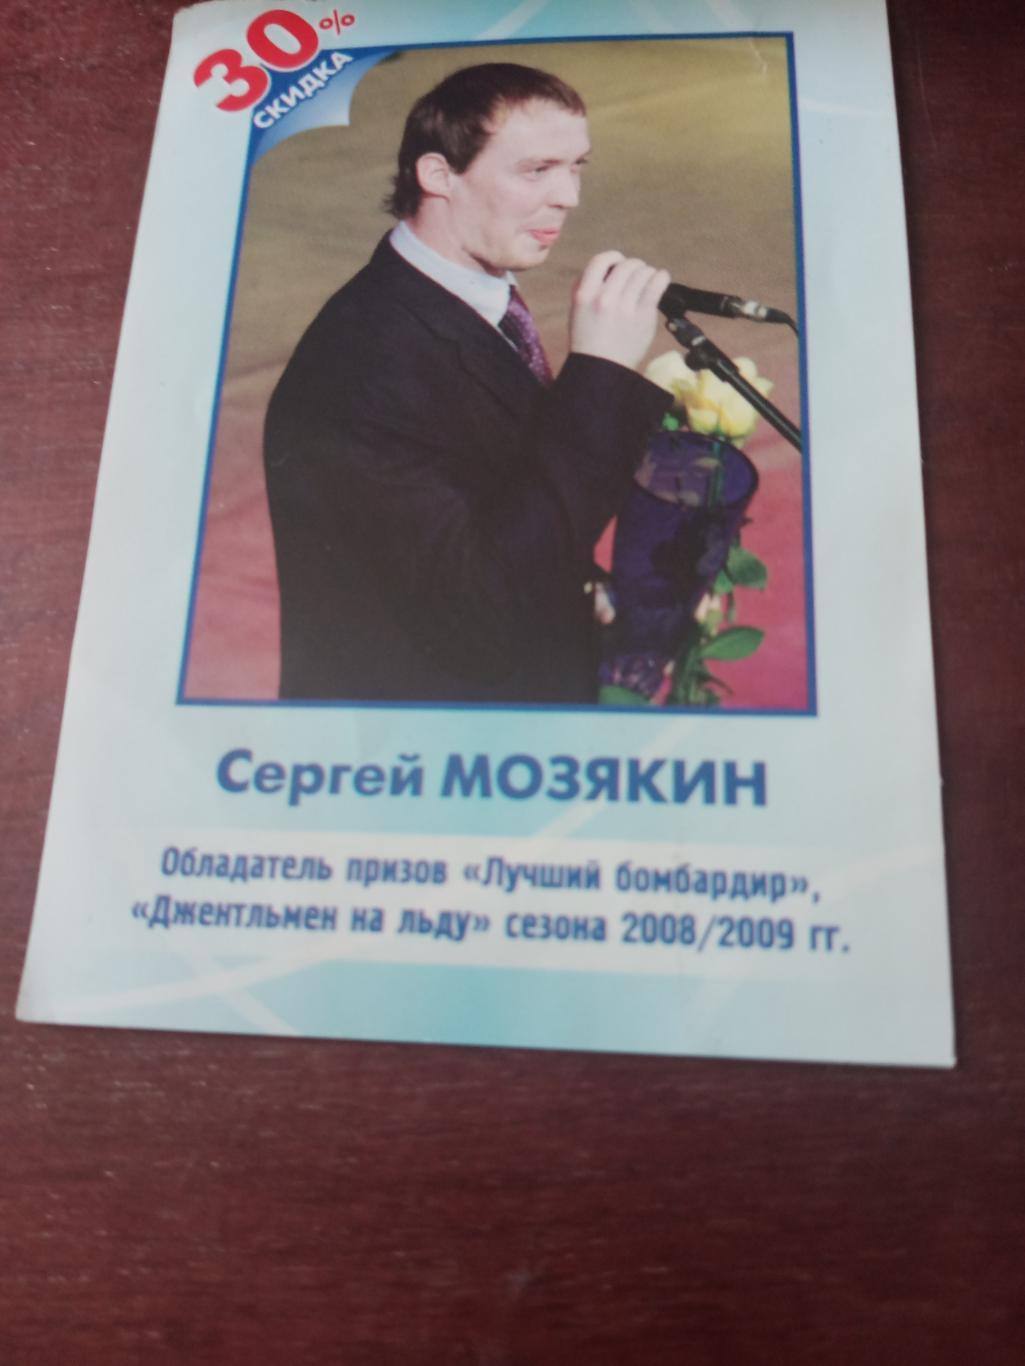 Легендарный хоккеист Сергей Мозякин